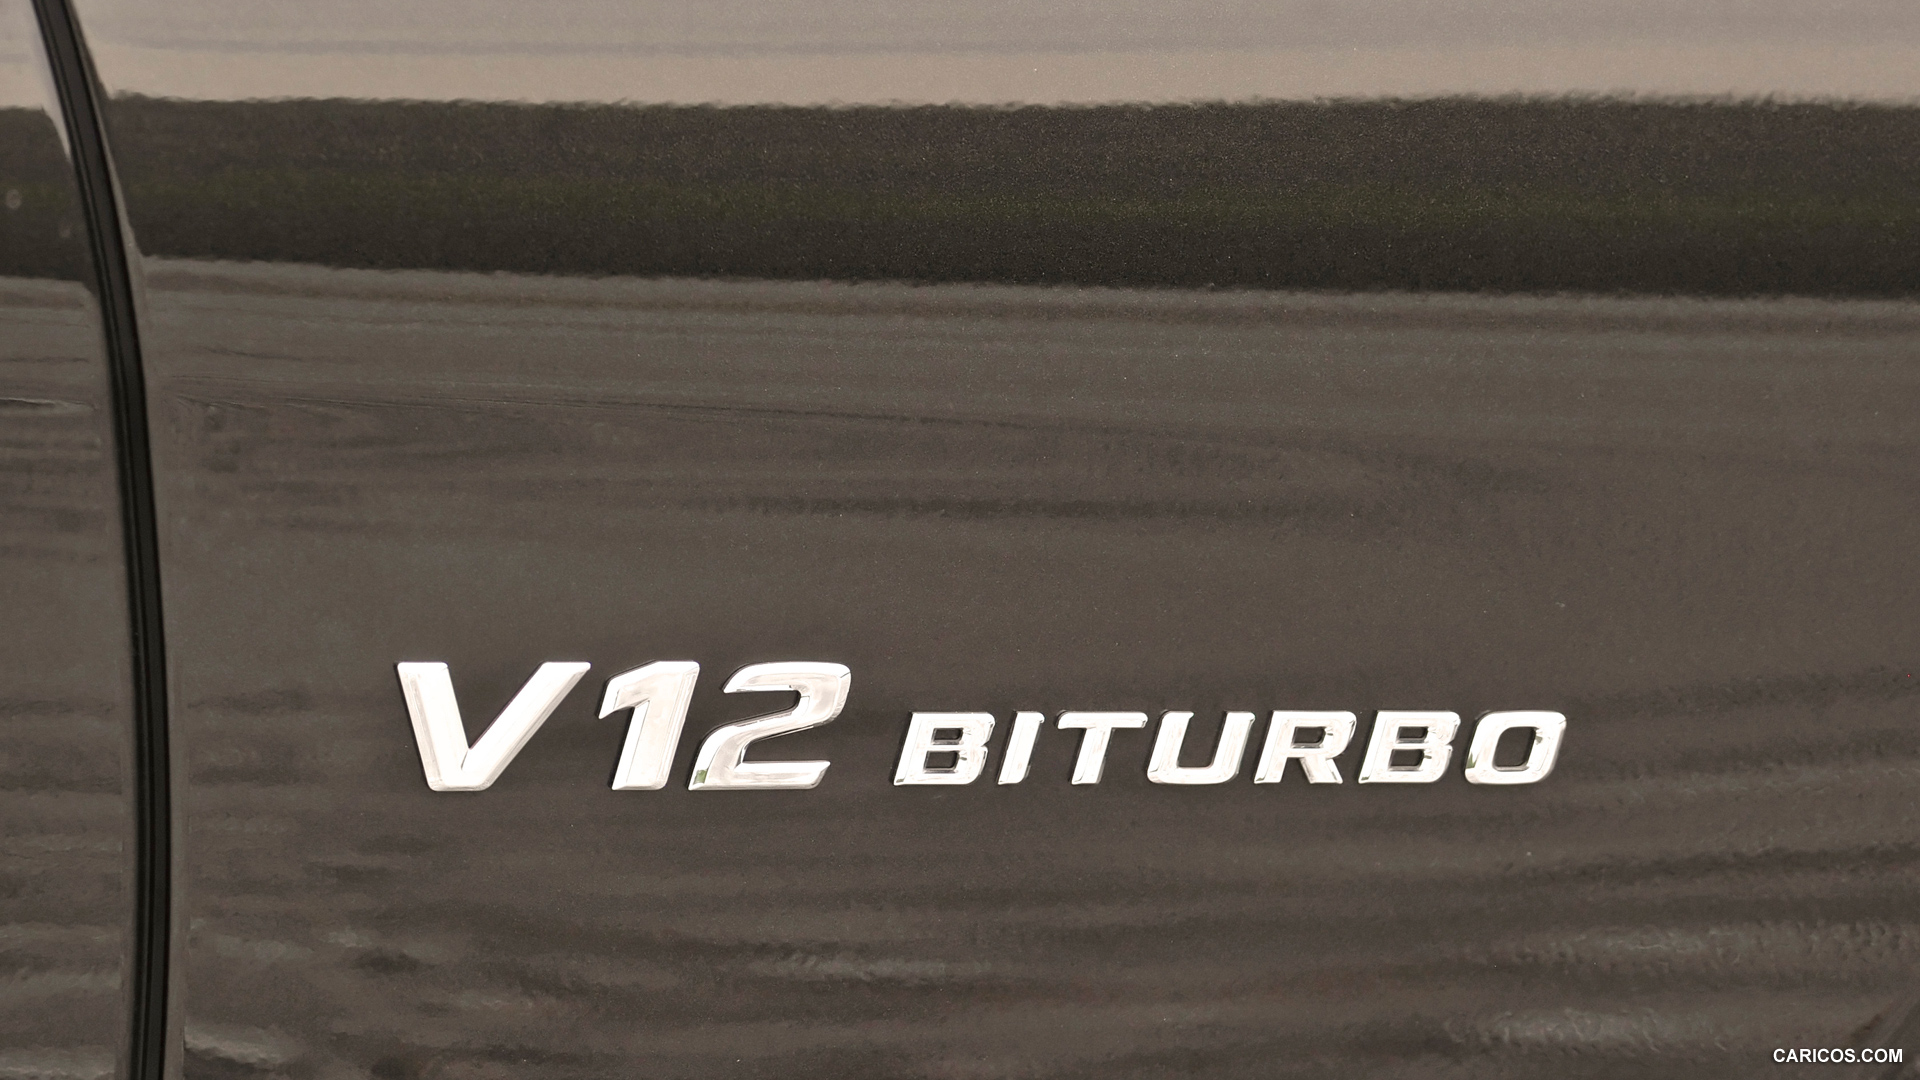 Mercedes-Benz CL65 AMG (2011) - V12 Biturbo Badge - , #35 of 37